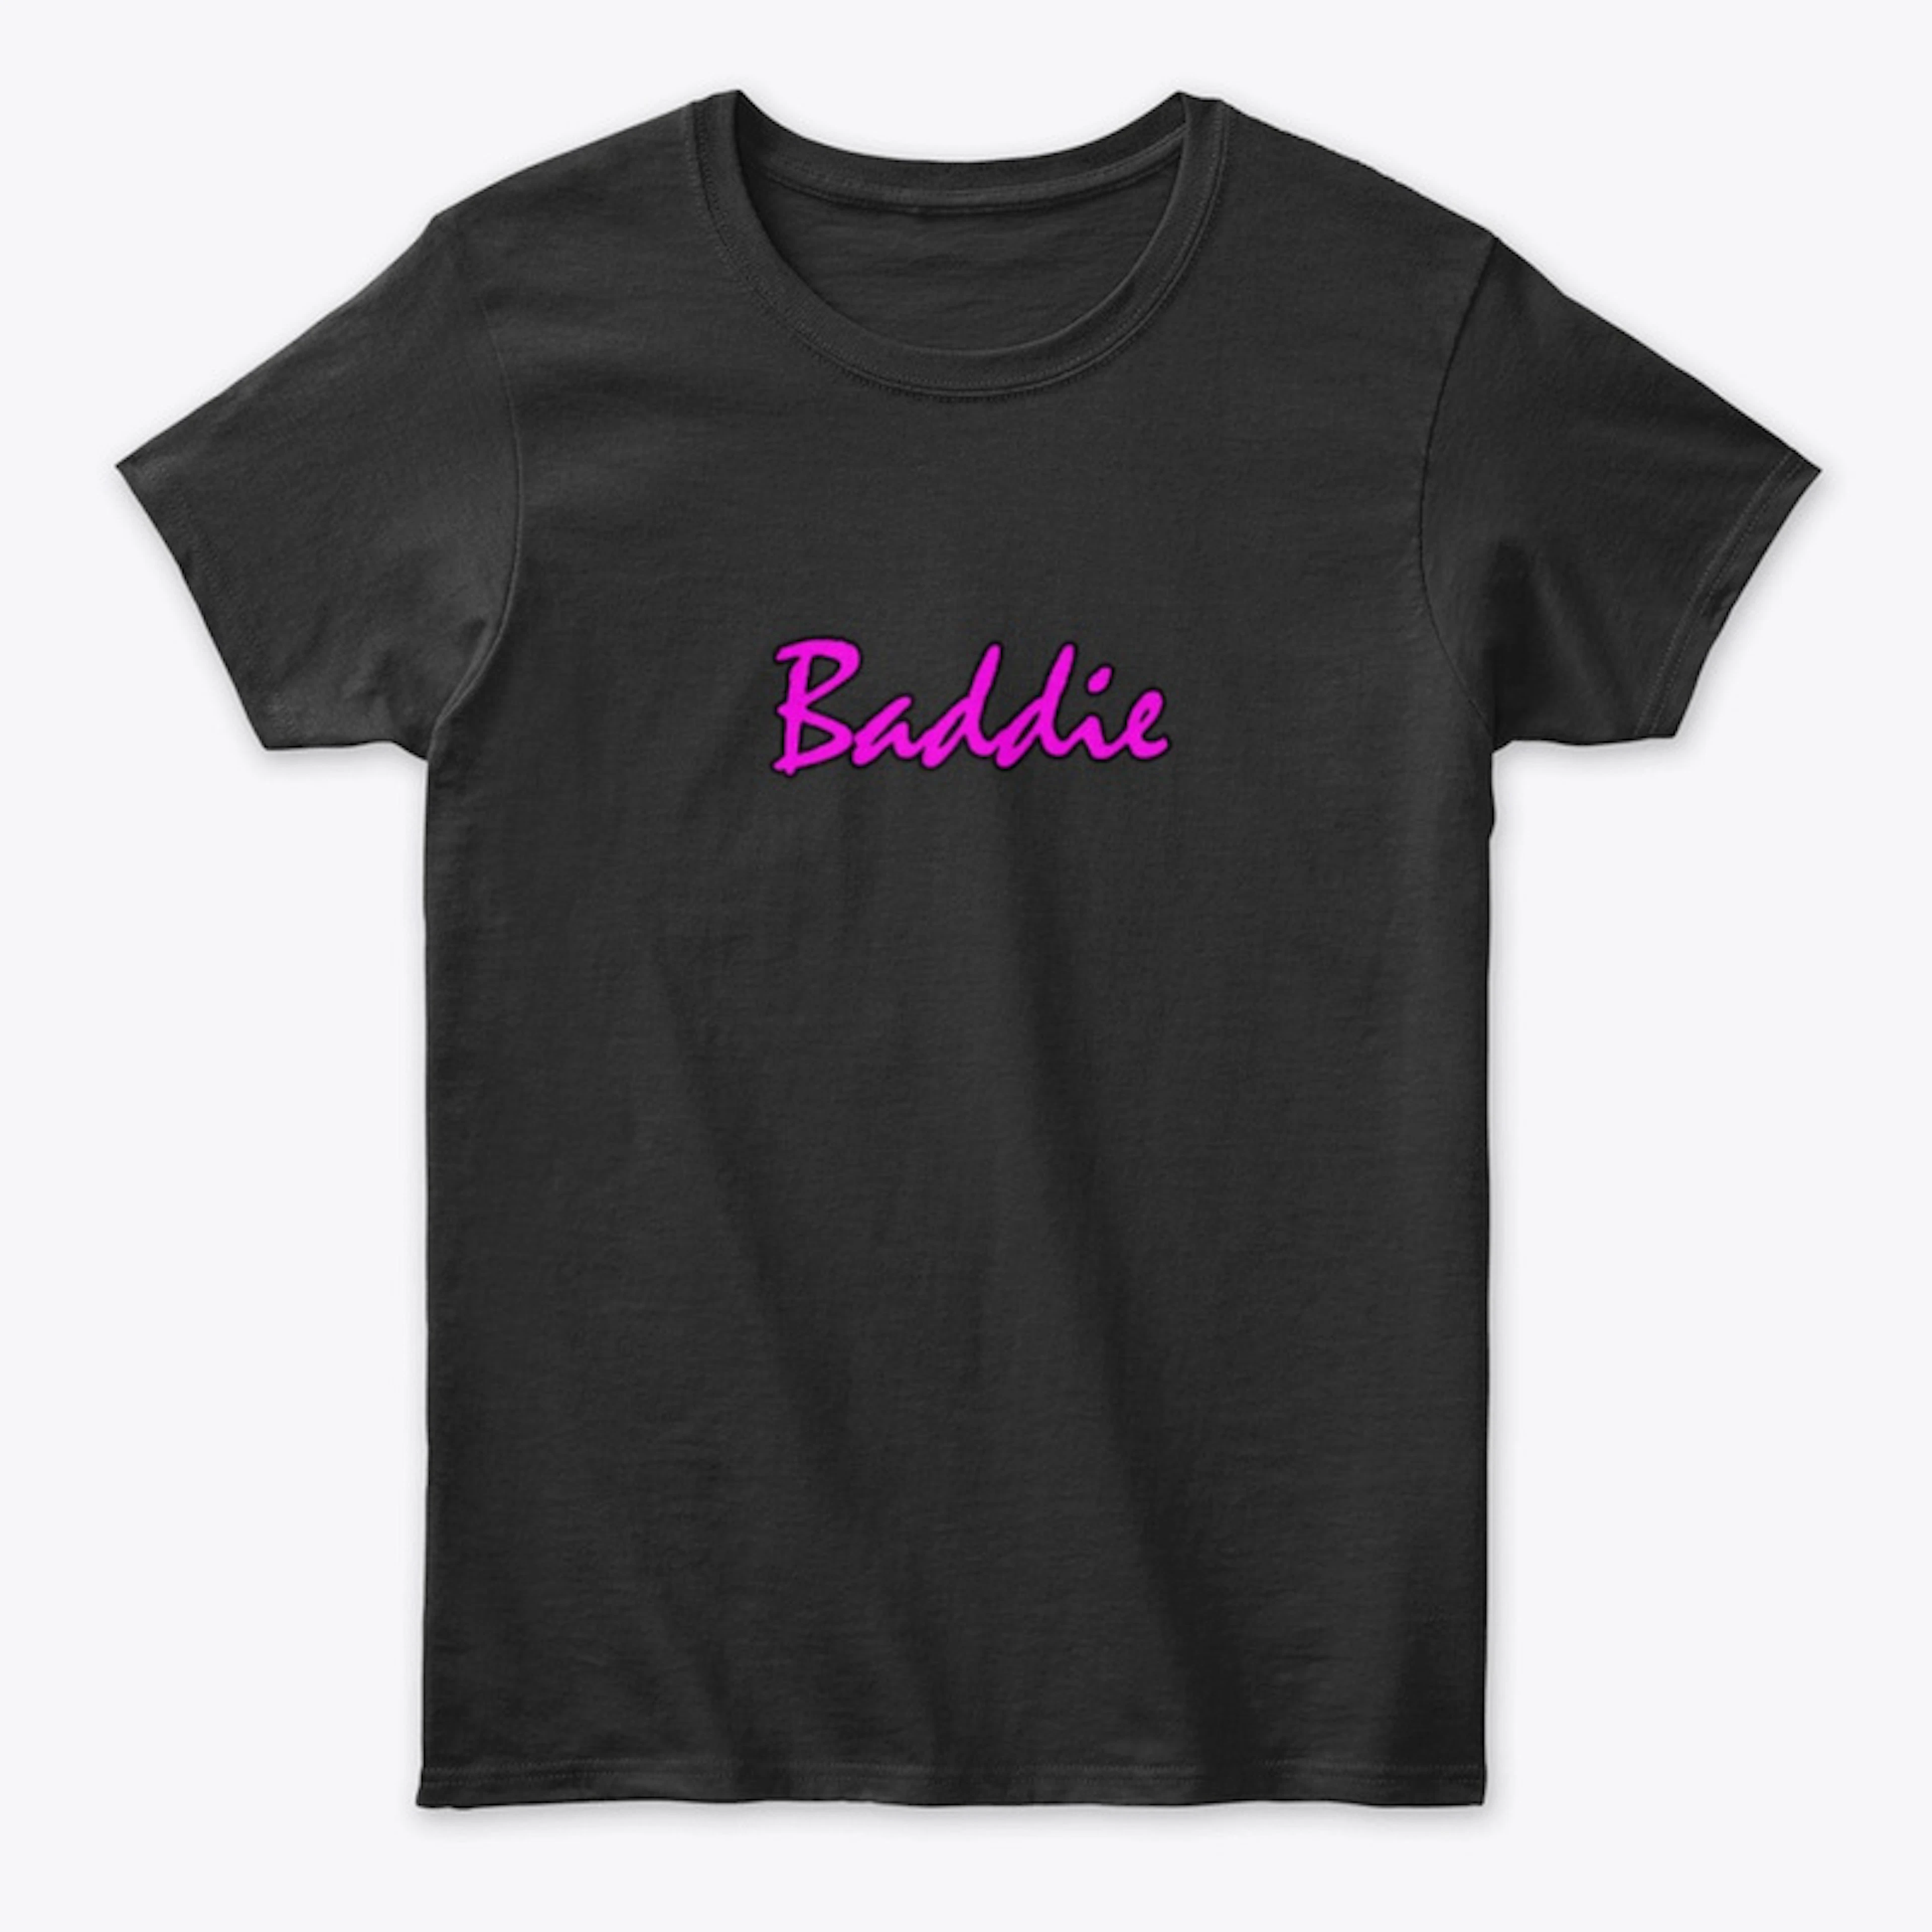 Baddie Wear